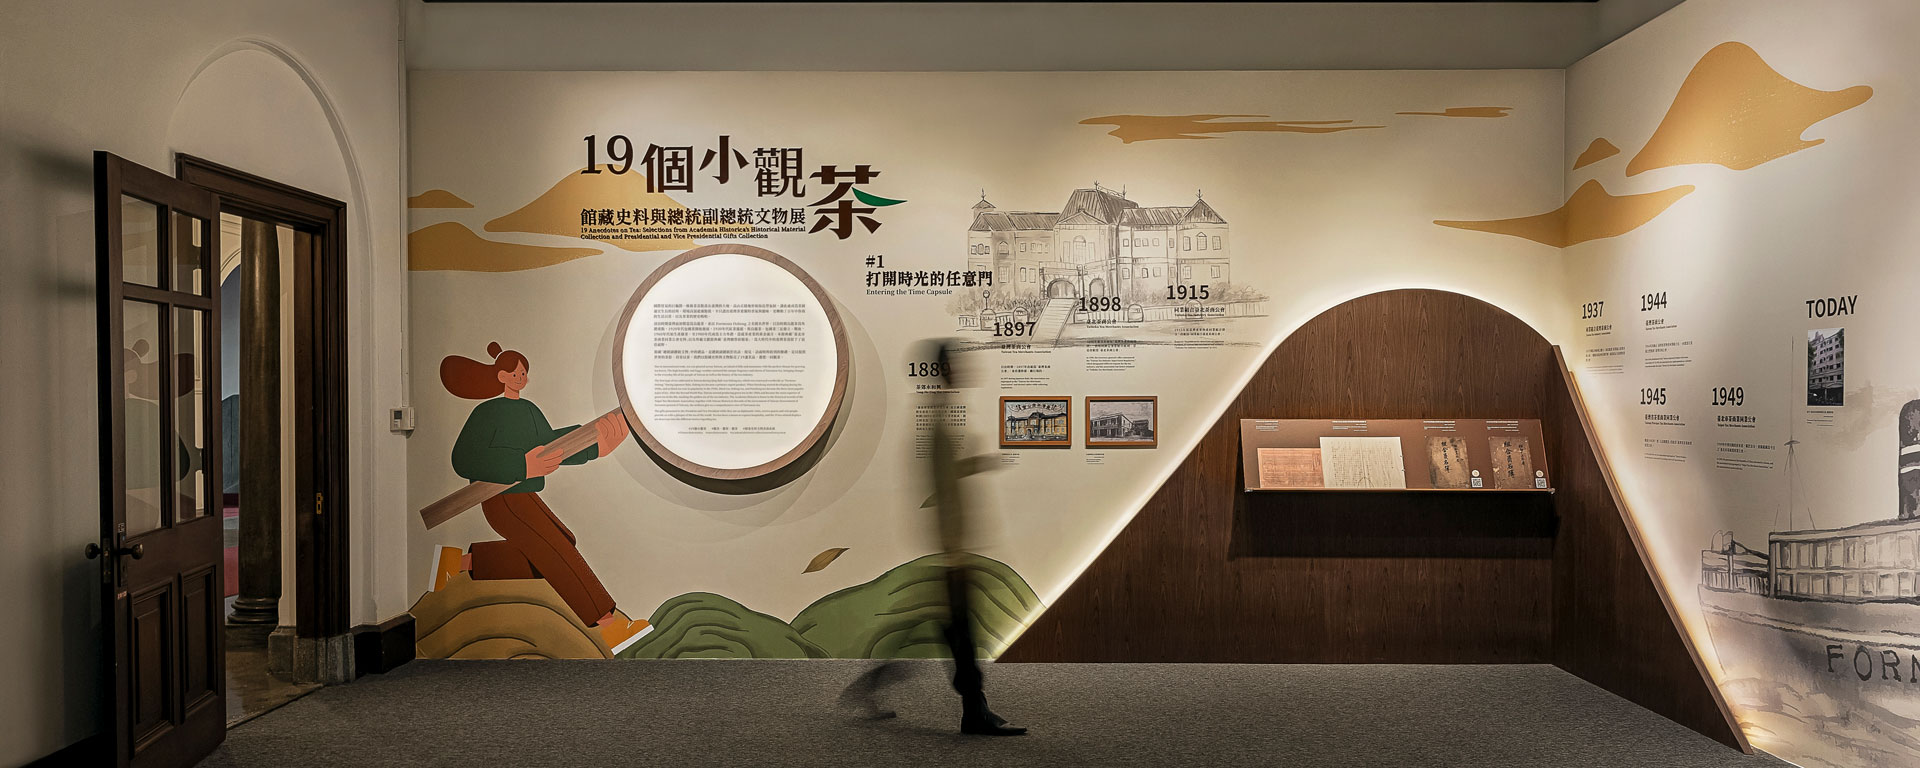 國史館19個小觀茶— 館藏史料與總統副總統文物展